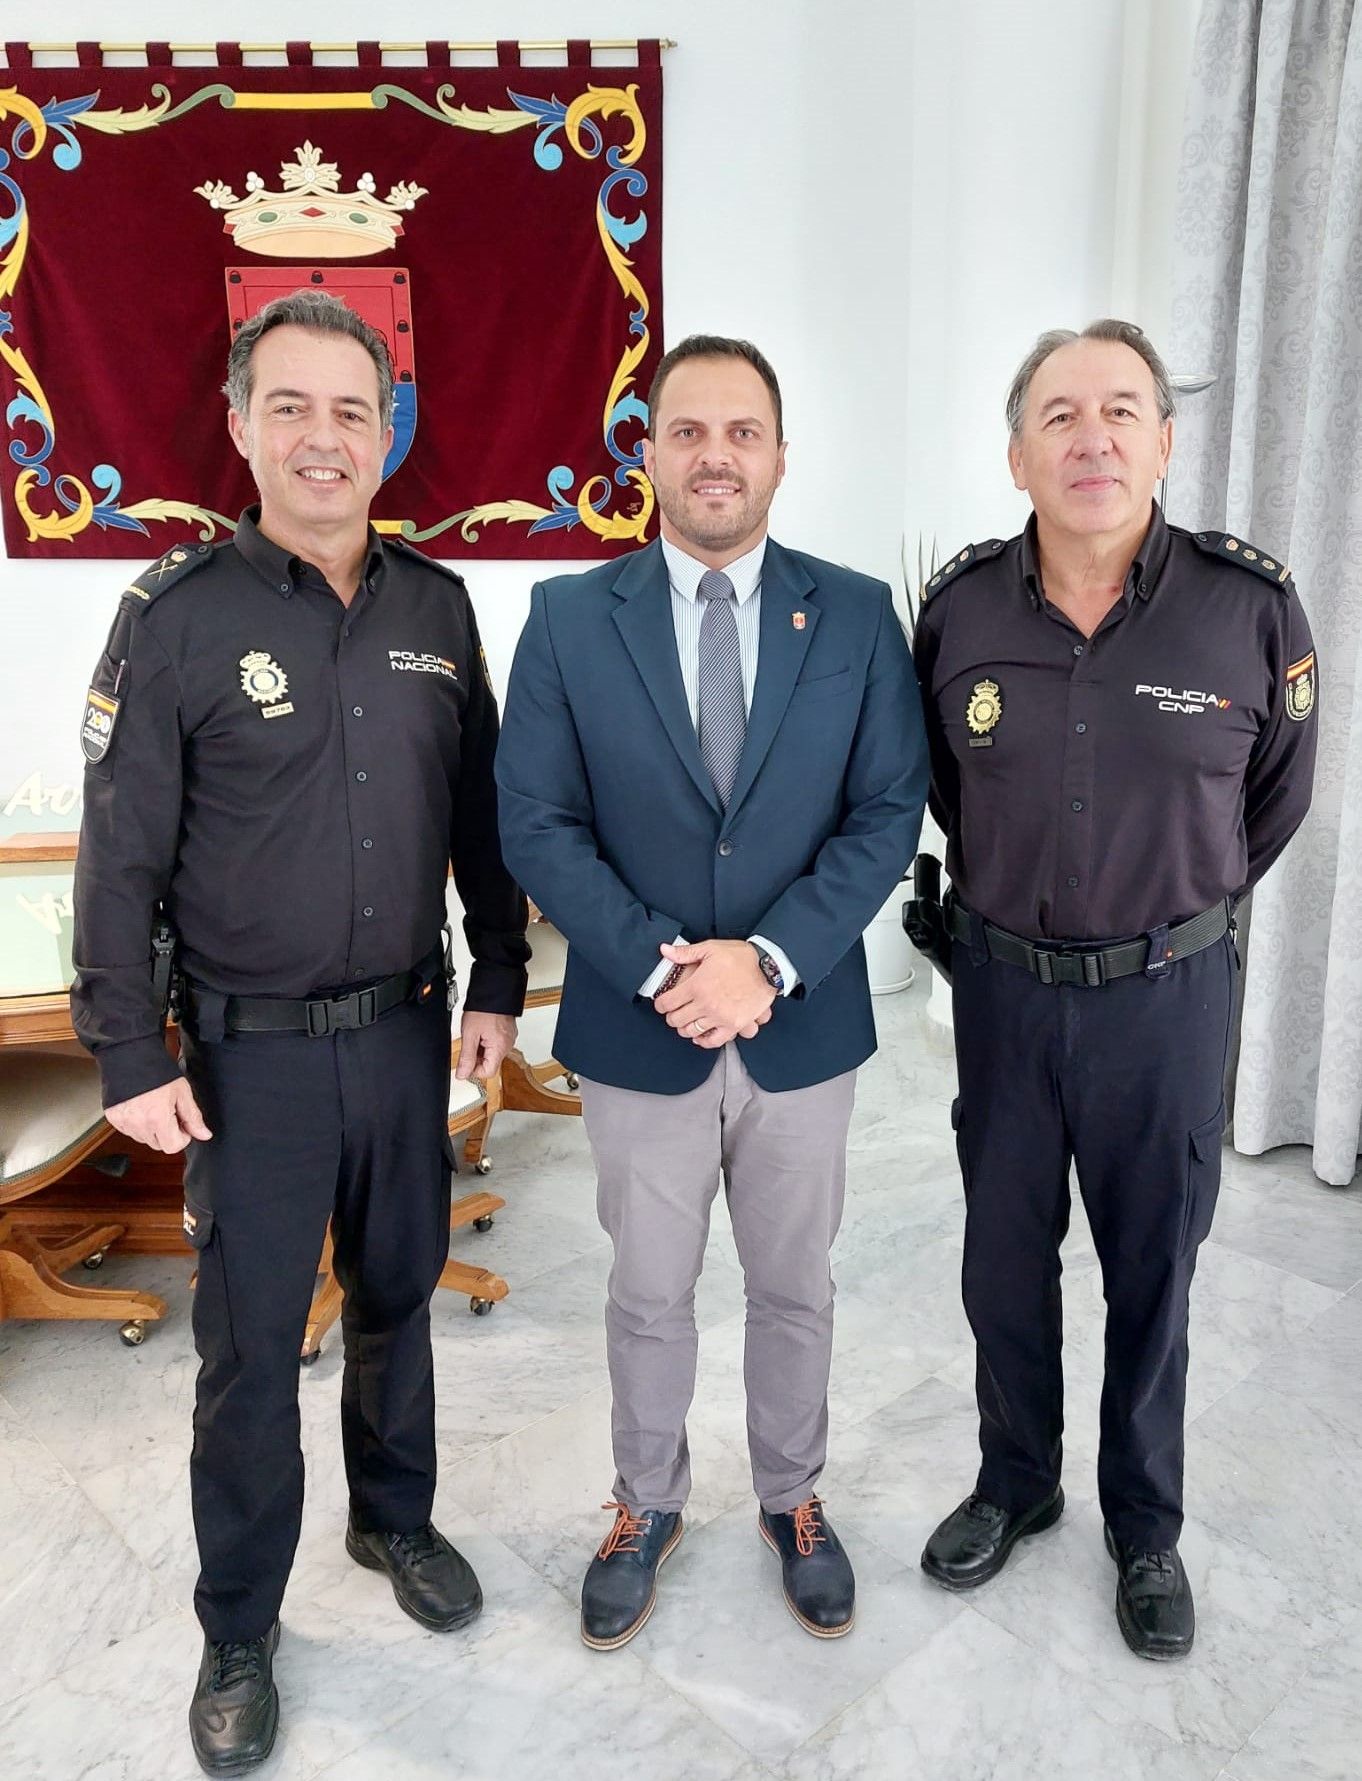 El alcalde de Arrecife junto al Comisario Jefe Superior de la Policía Nacional en Canarias, y el Comisario Jefe de Arrecife